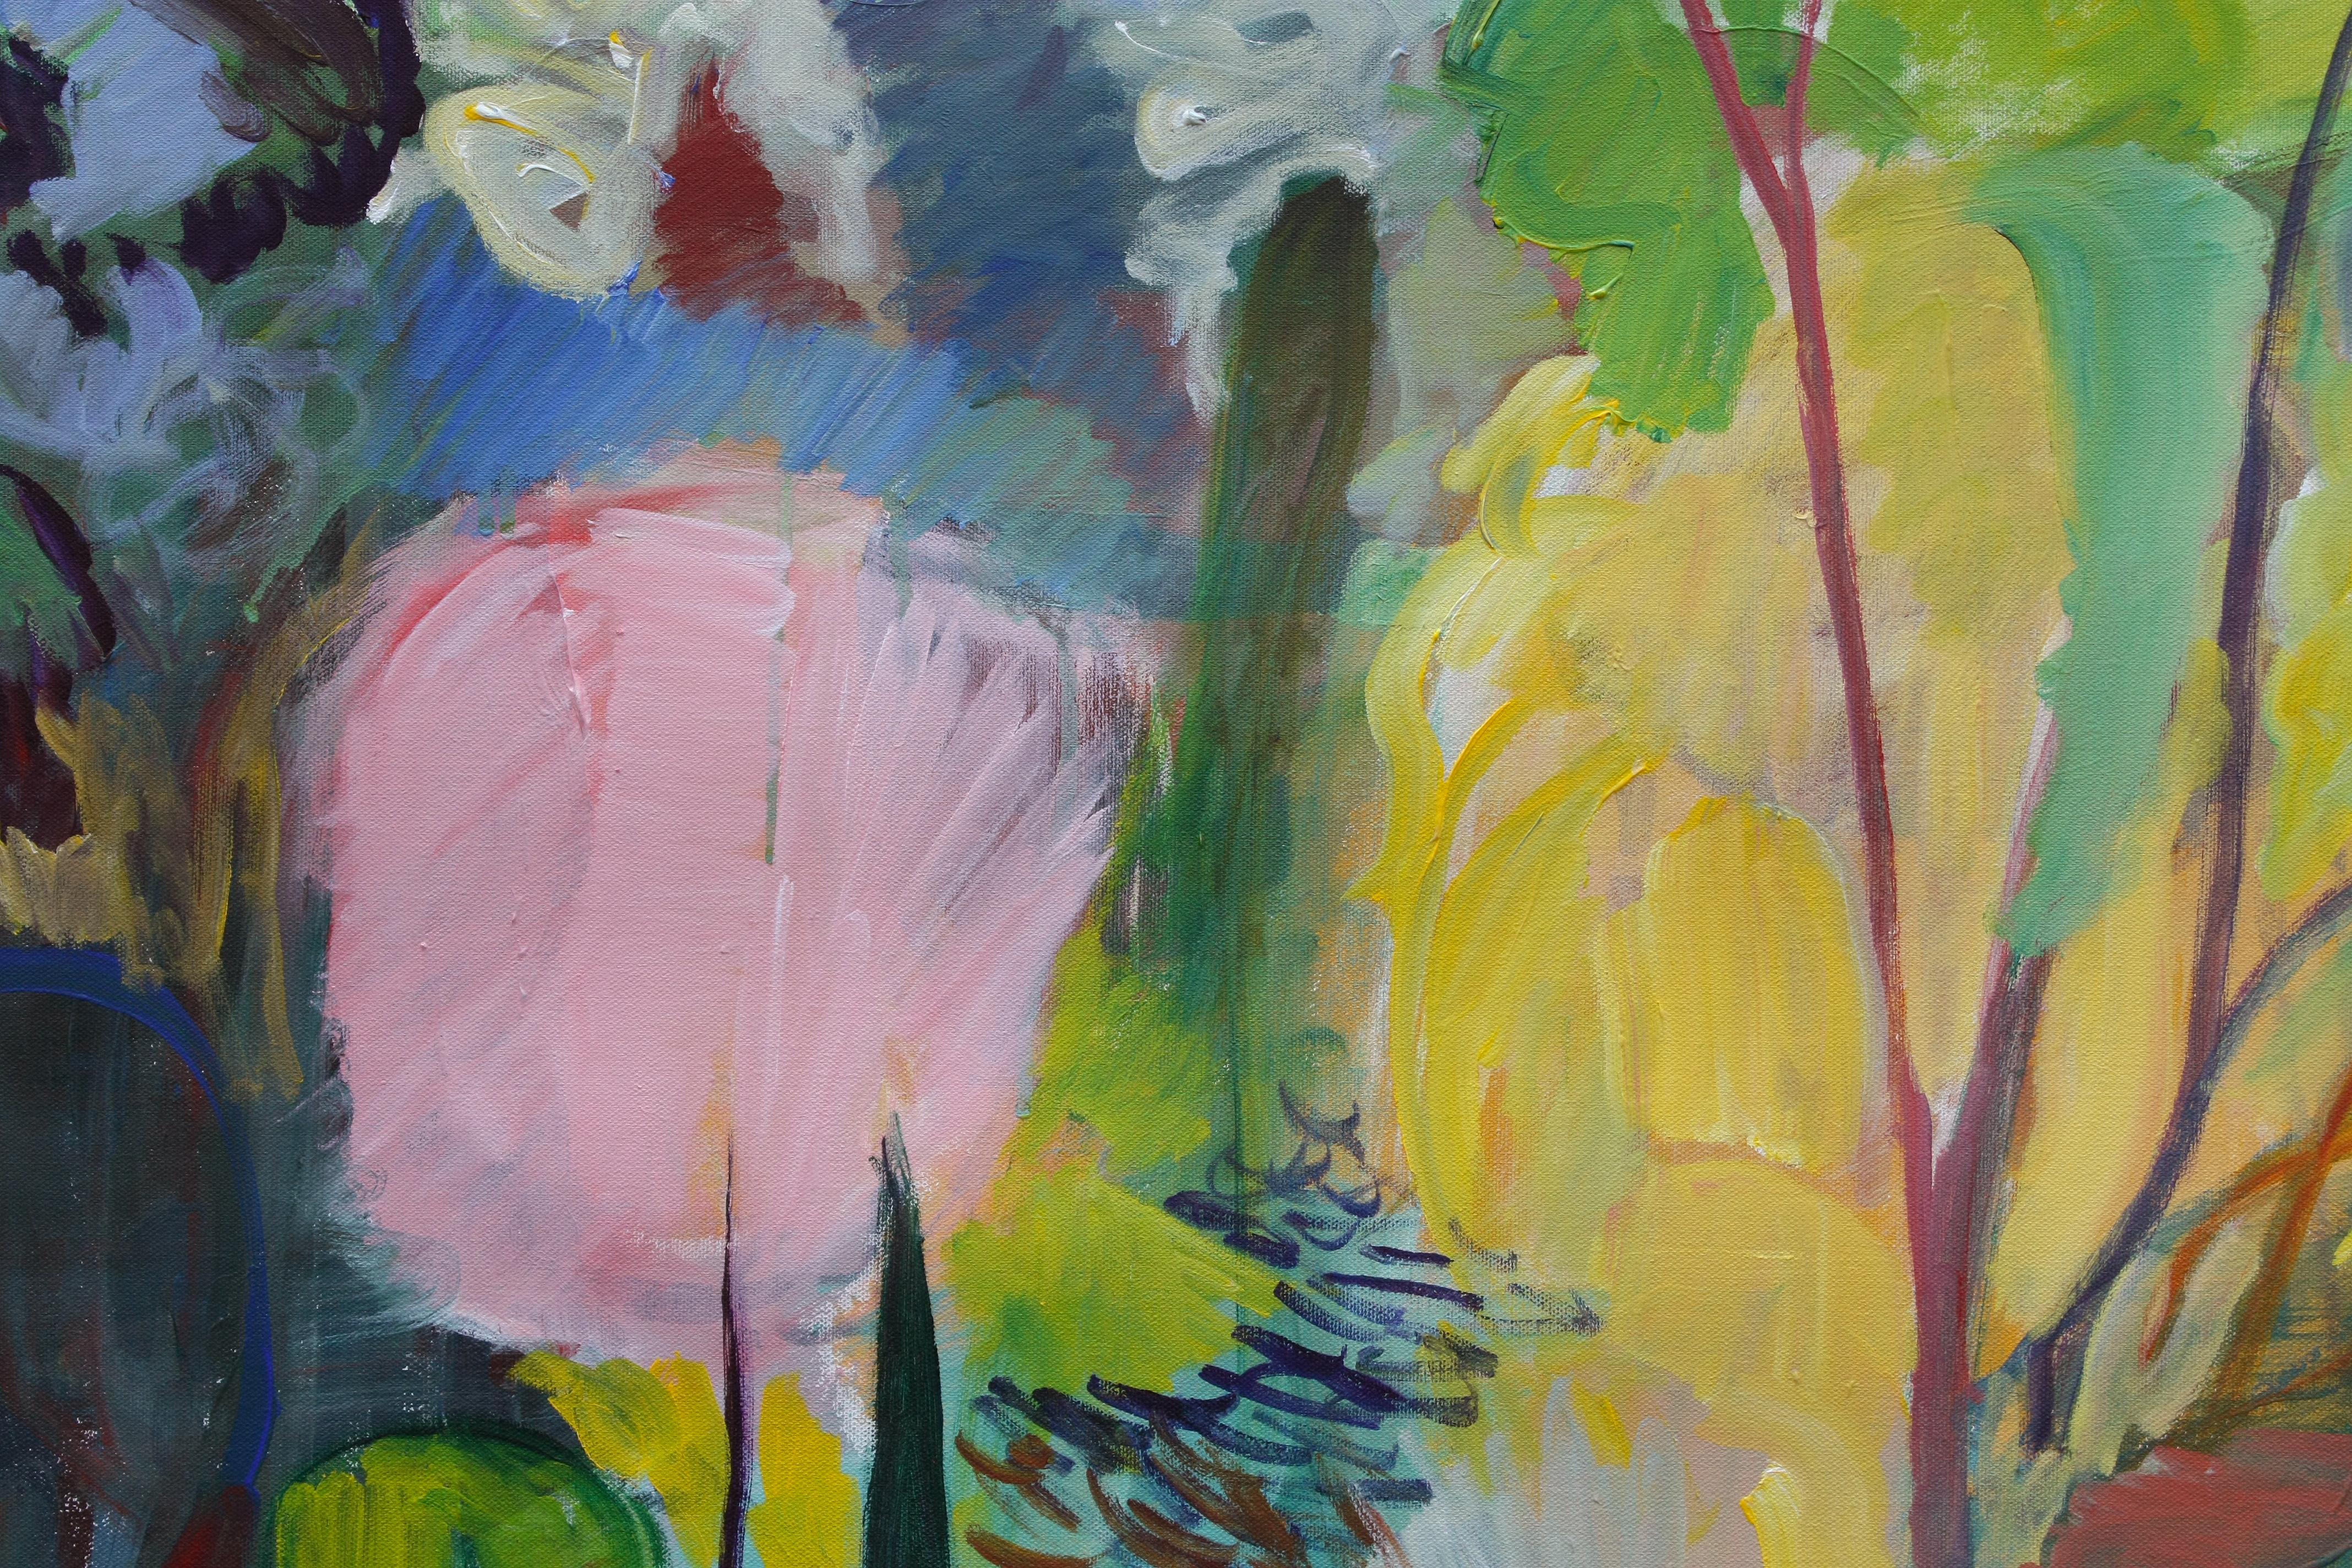 <p>Kommentare des Künstlers<br>Inspiriert von Ivon Hitchens' ausdrucksstarken Landschaften,  Dieses Kunstwerk stellt eine frühlingshafte Waldszene mit leuchtenden Farben dar. Ein rosafarbener Hartriegelbaum bildet den Mittelpunkt der Komposition und